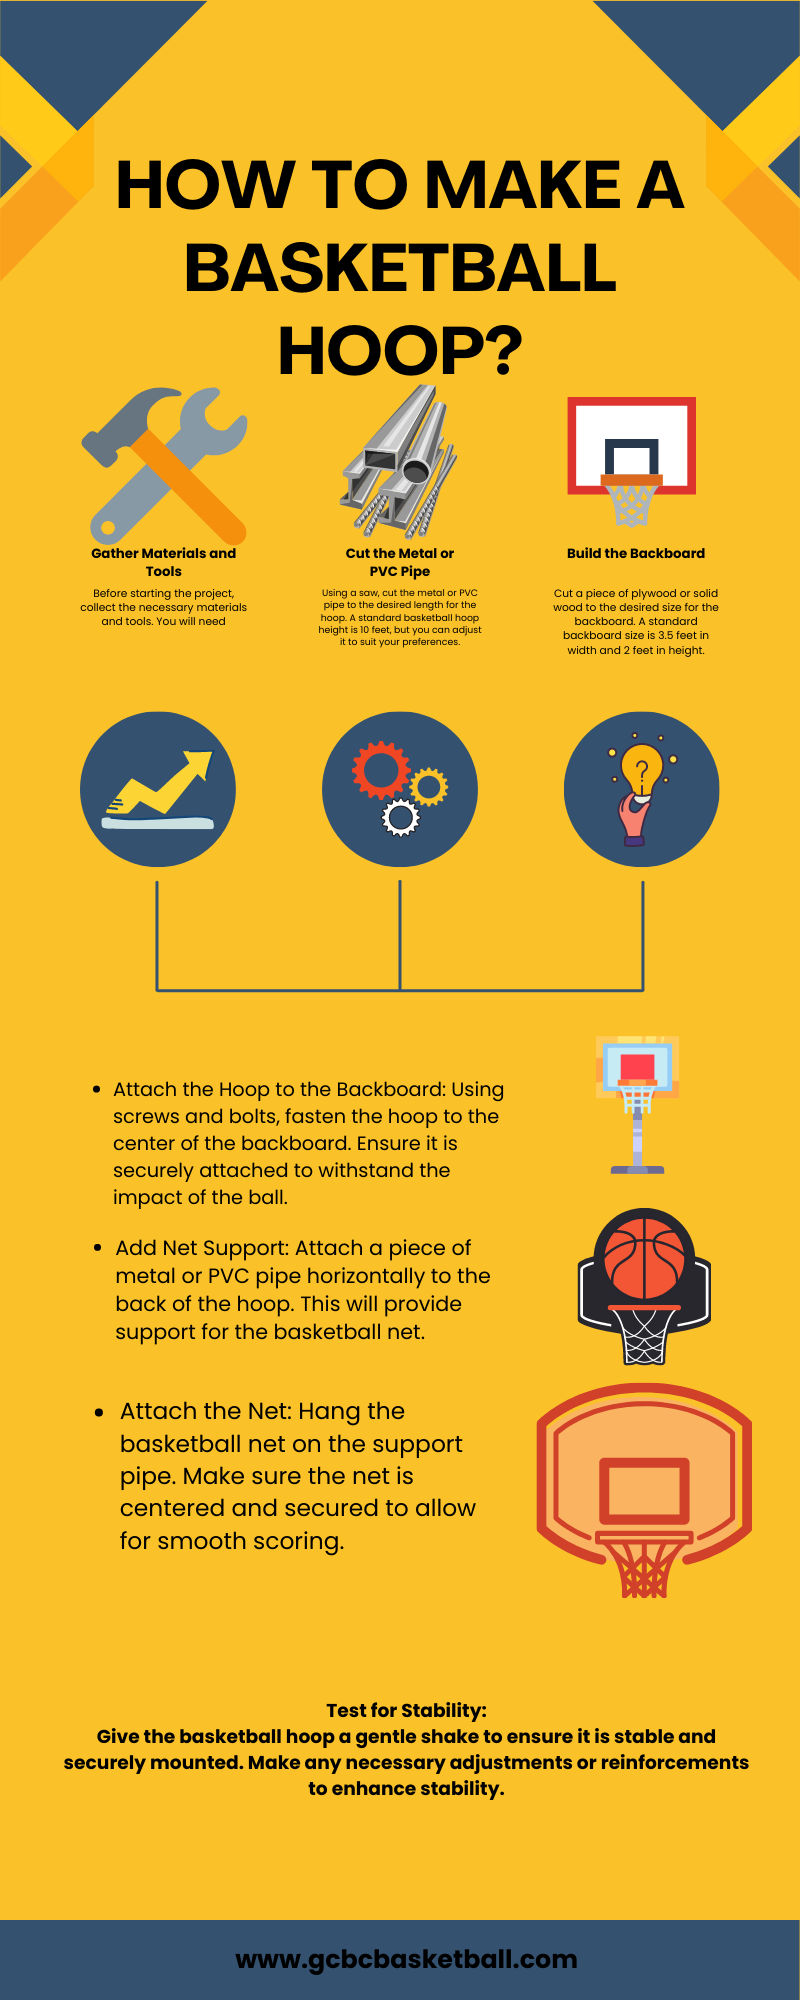 How To Make A Basketball Hoop? - GCBCBasketball Blog